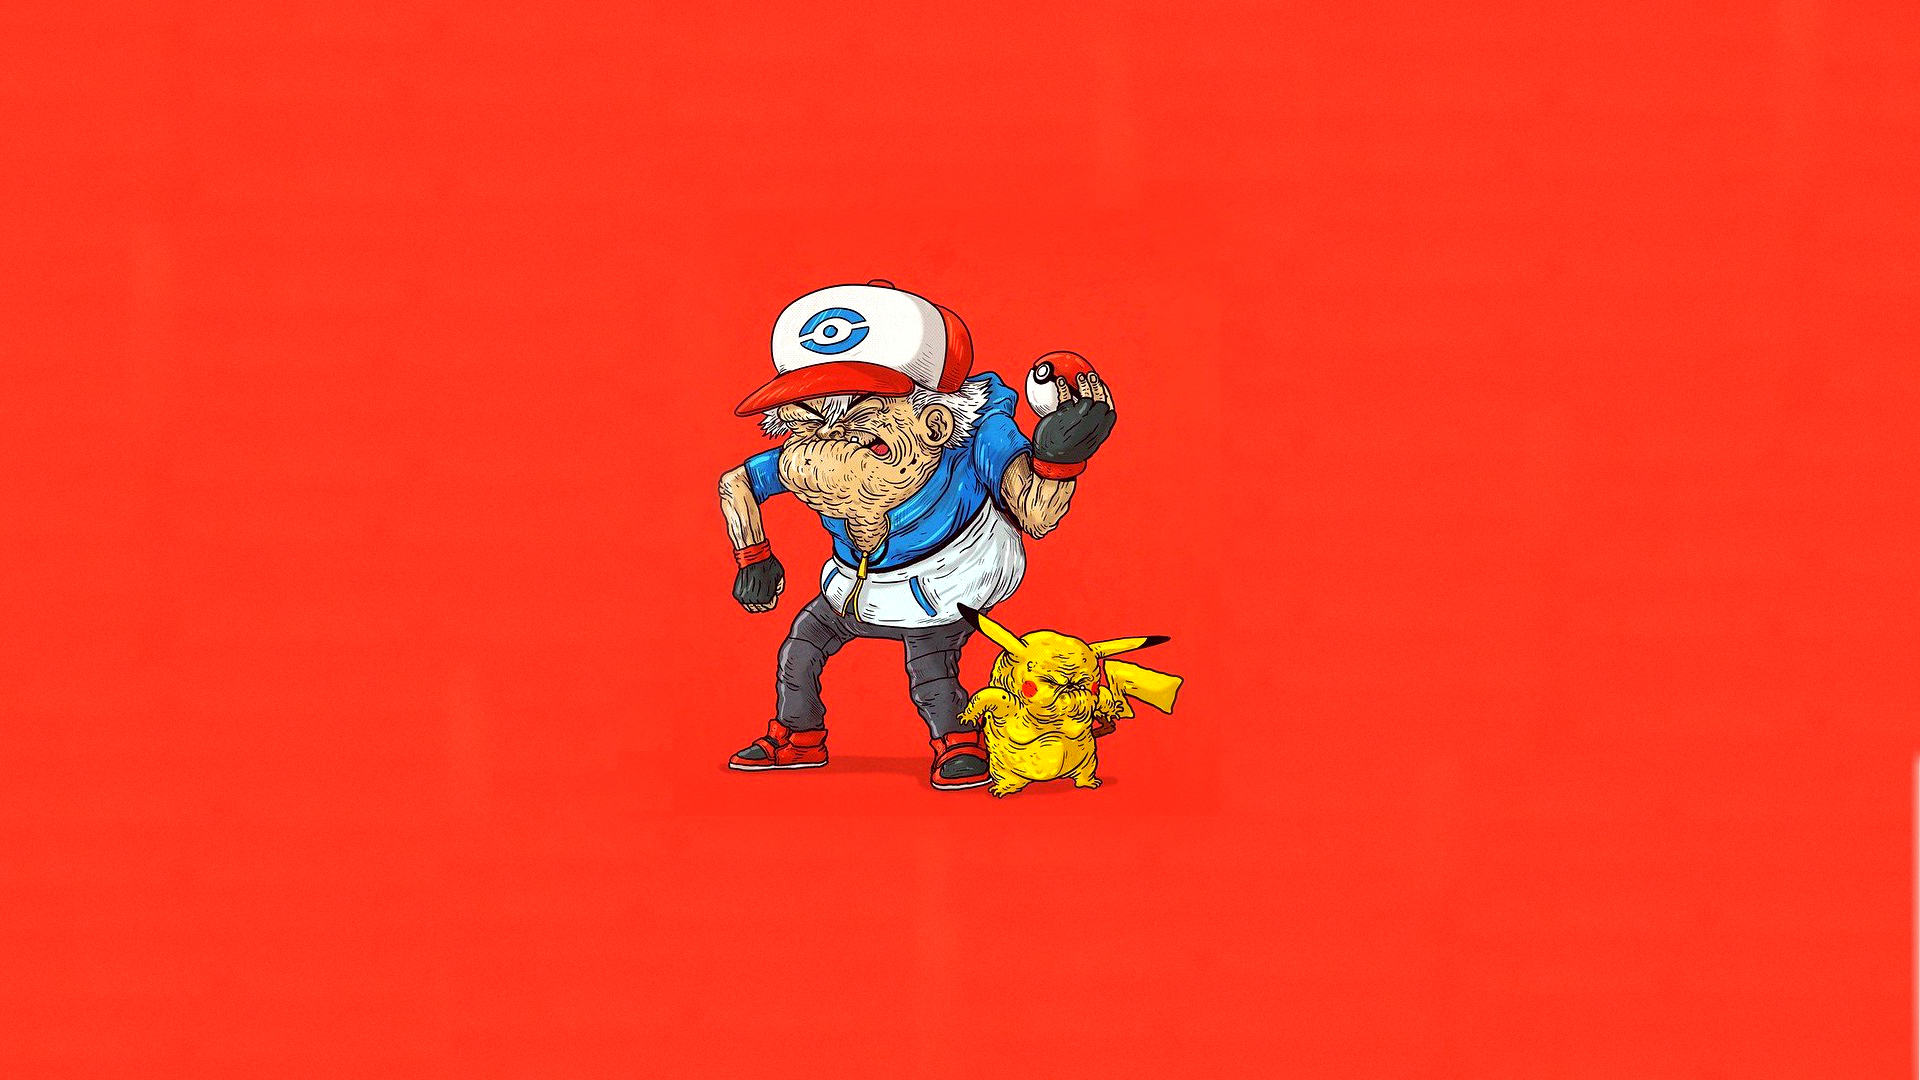 Download 1920x1080 Red Ash Pokemon Wallpaper